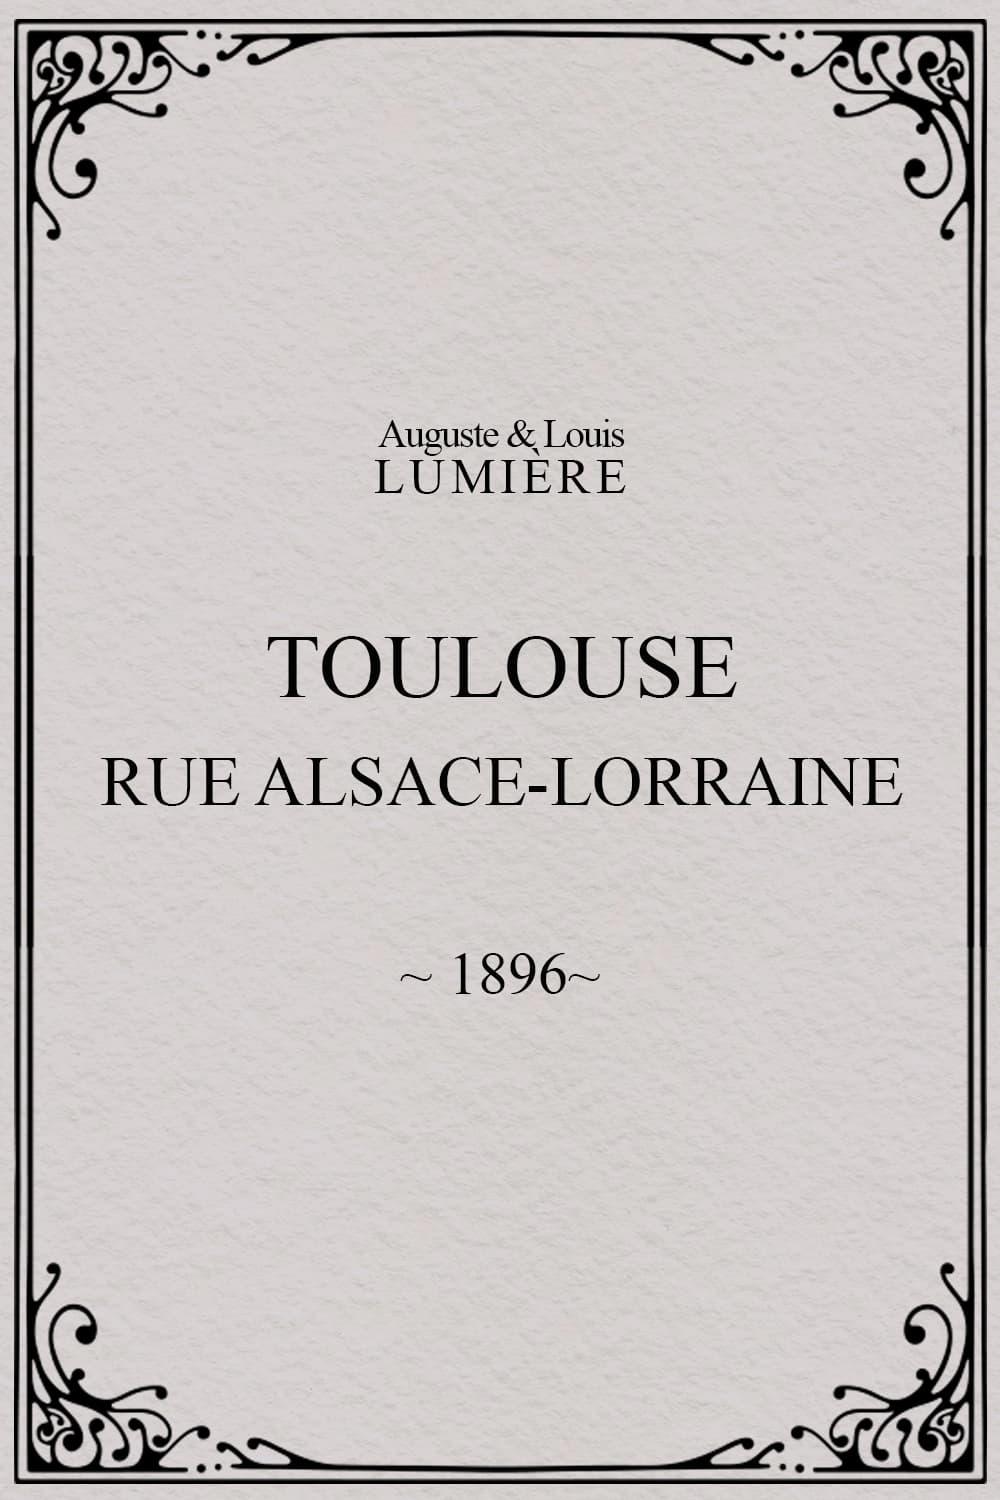 Toulouse, rue Alsace-Lorraine (1896)